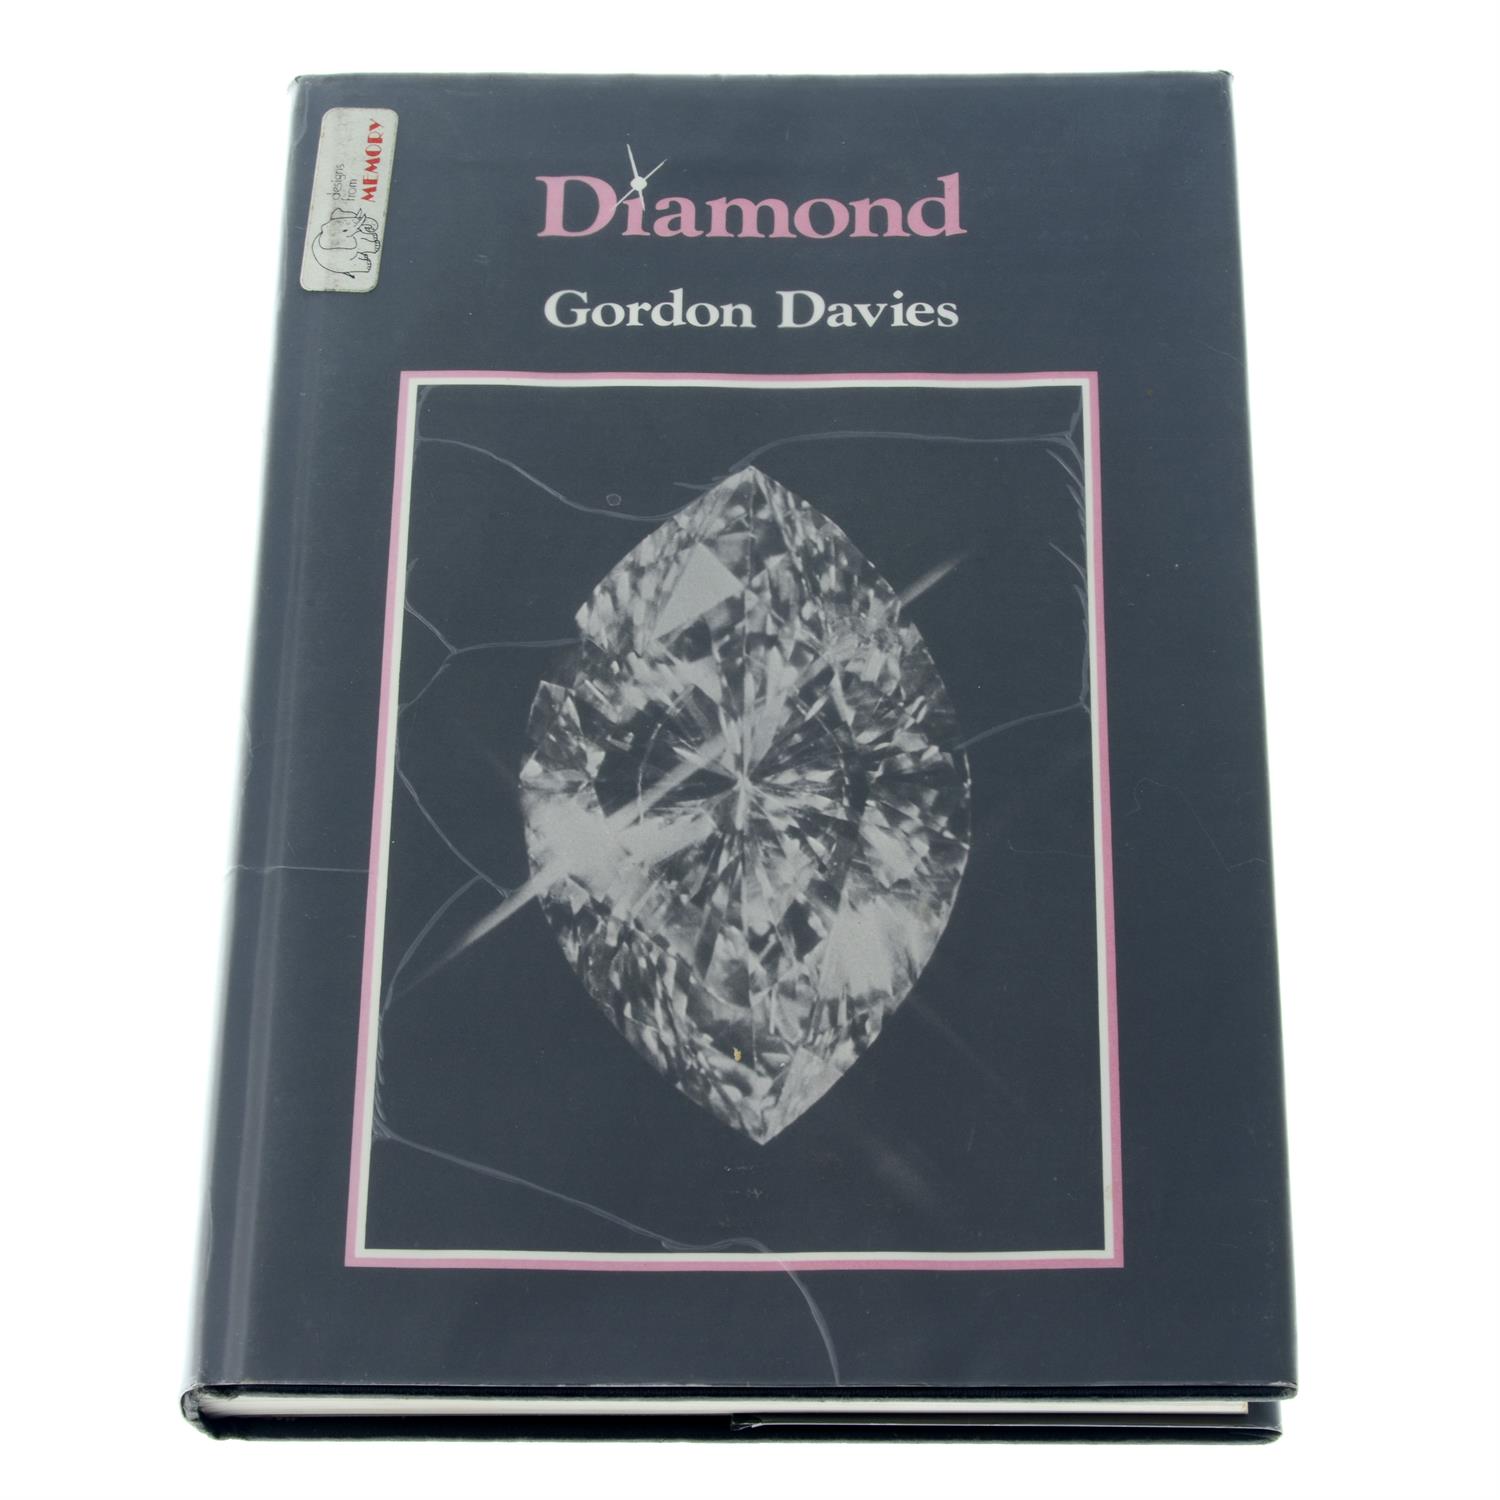 Book: 'Diamond' by G. Davies